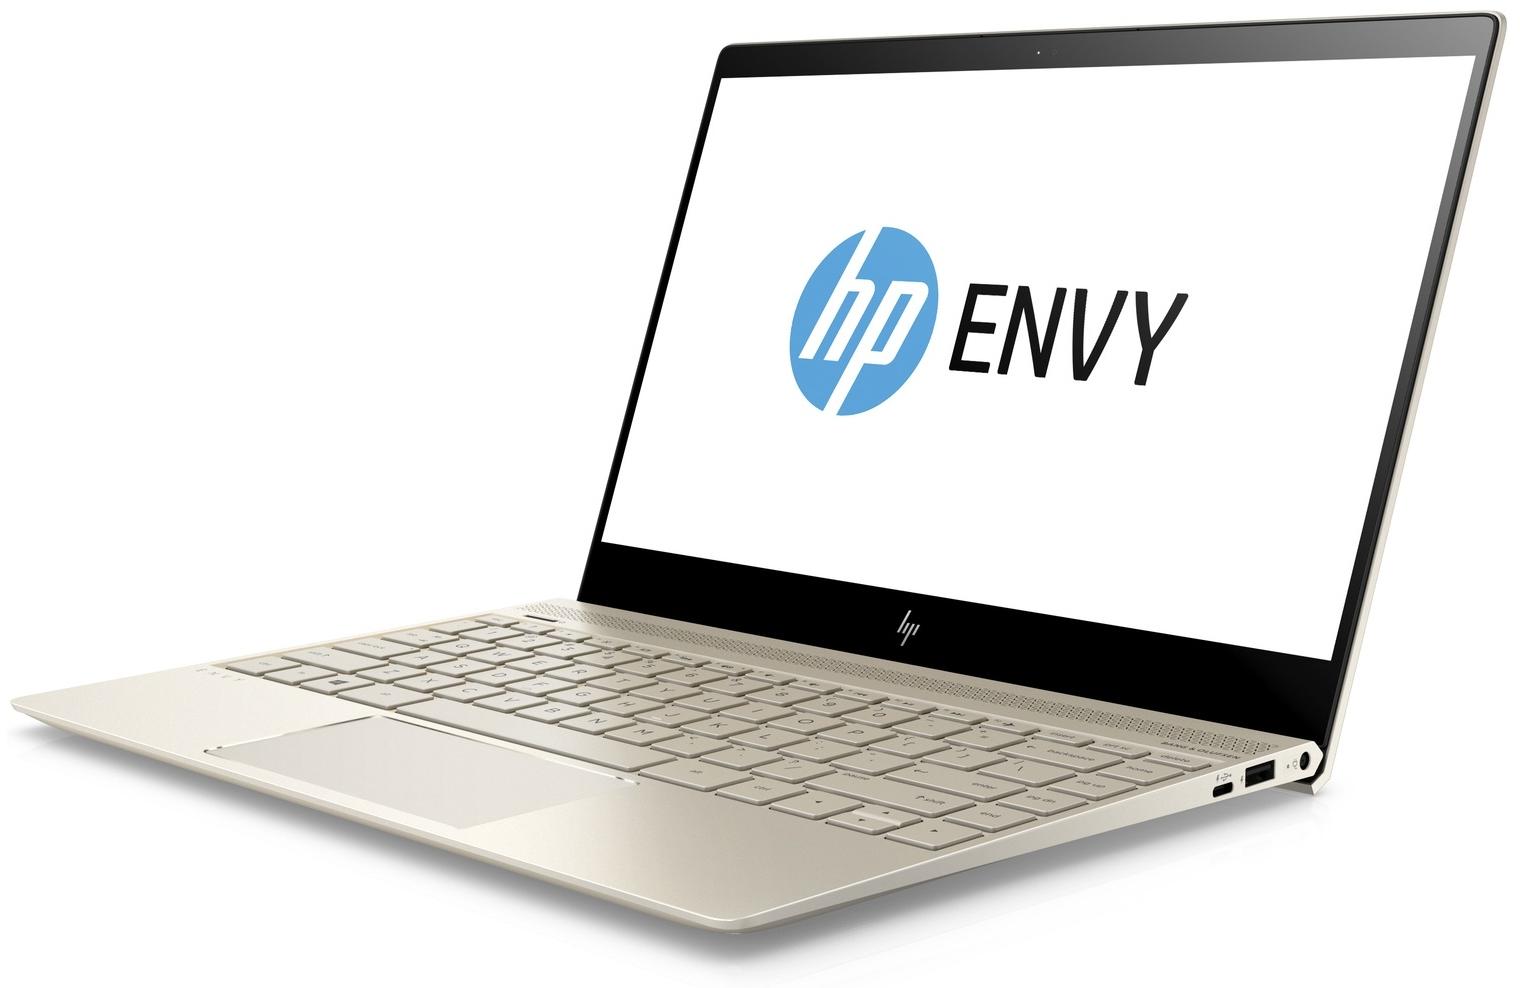   HP Envy 13-ad109ur (2PP98EA)  1